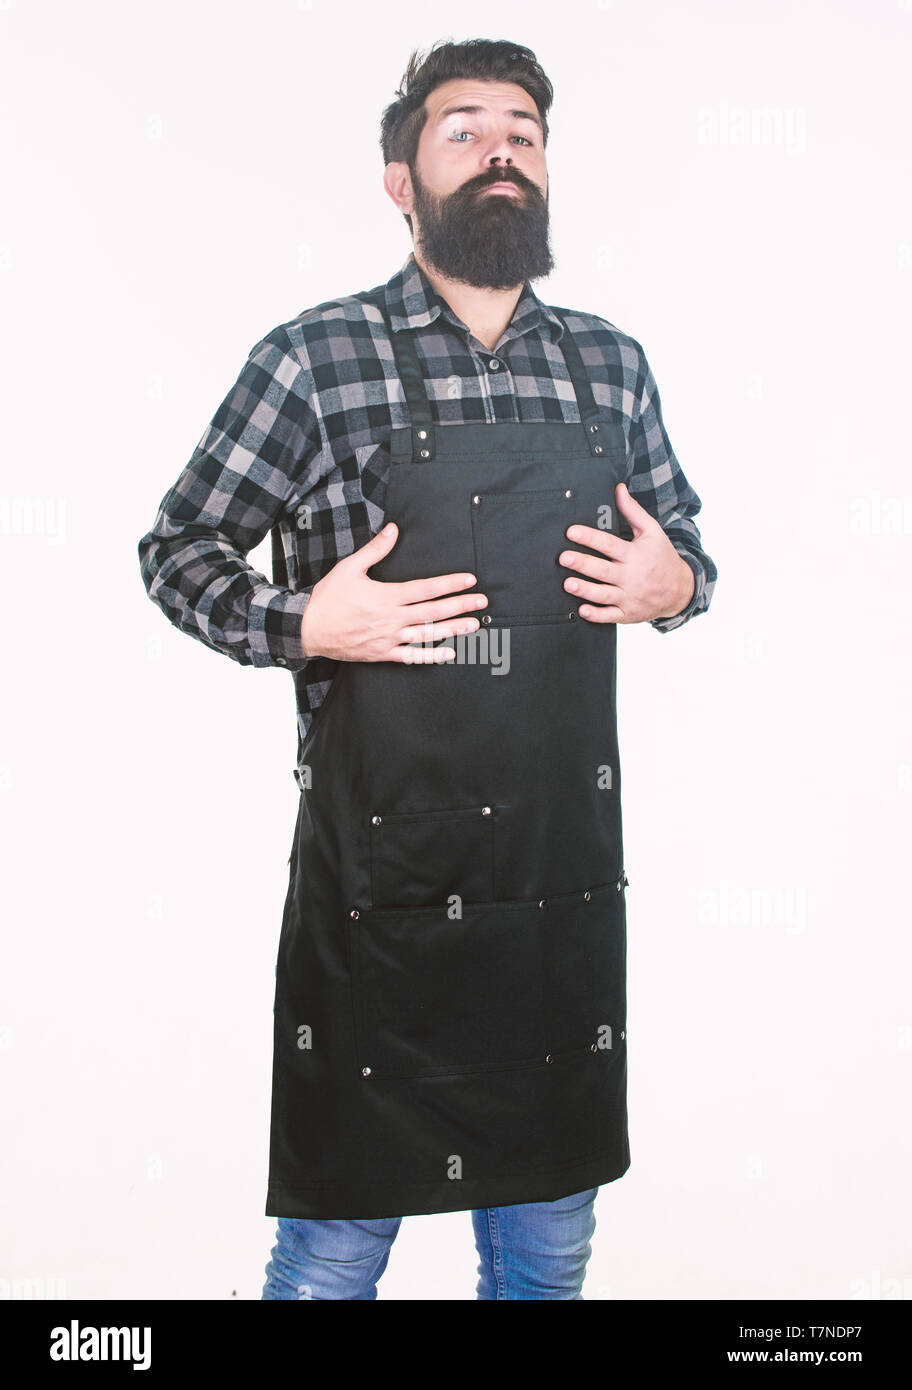 Arbeit sucht. Hipster Vorbereitungen für den Arbeitsalltag im Friseursalon oder in der Küche. Bärtiger Mann tragen von Schürze mit vielen Taschen. Stockfoto